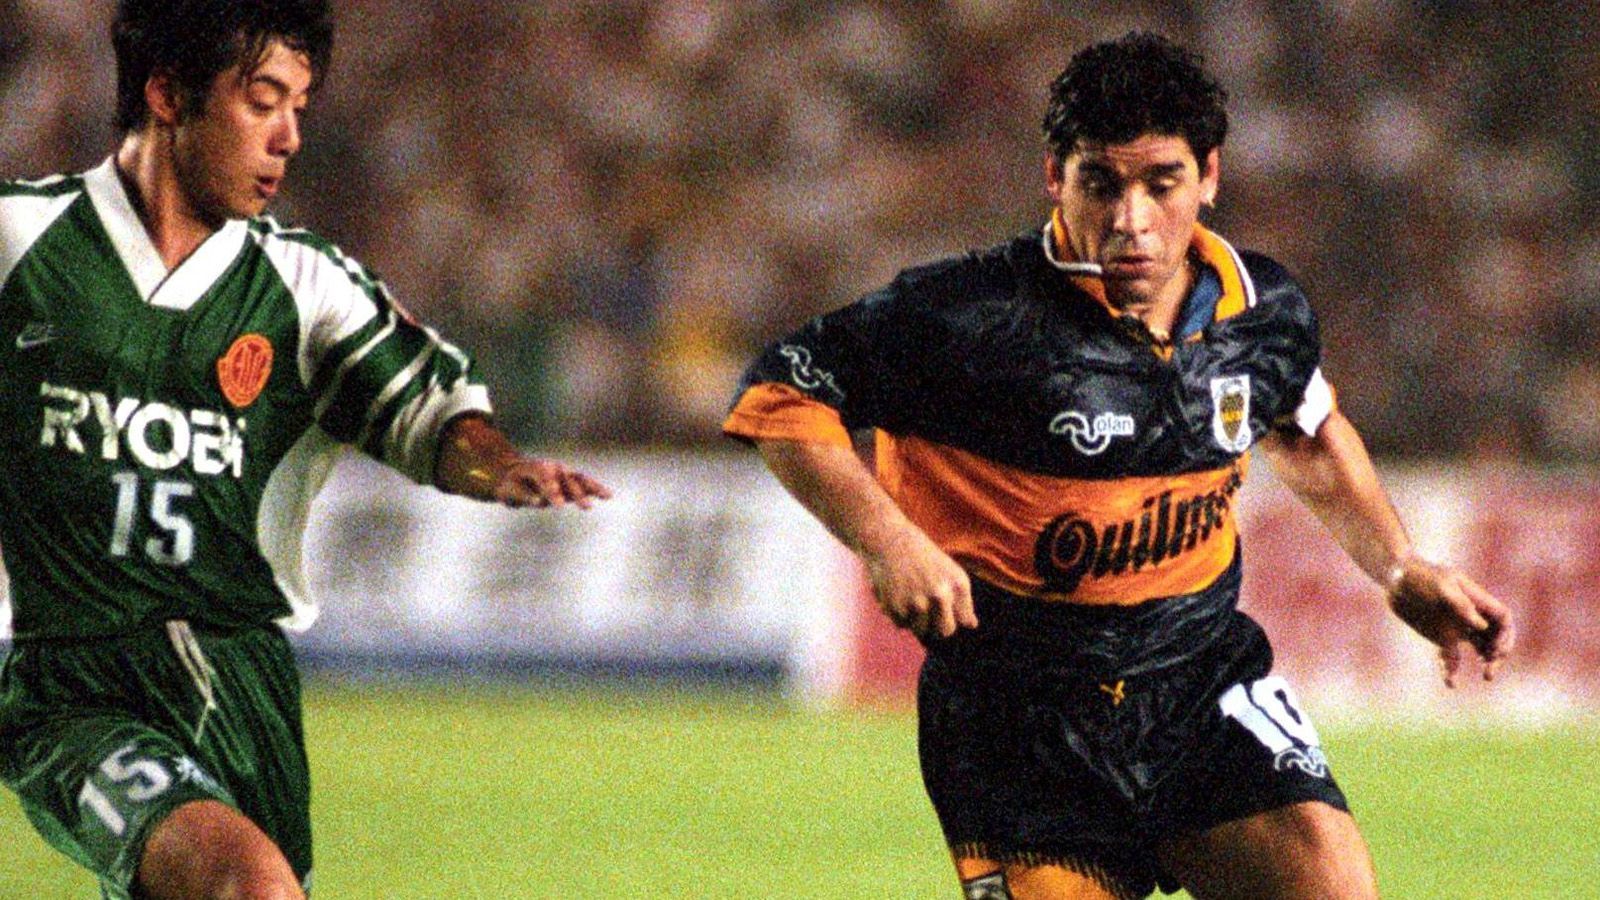 
                <strong>Diego Maradona: Doping und Drogen   </strong><br>
                Bereits in jungen Jahren hatte Diego Maradona wohl einen Hang zu Kokain. Im Alter von 30 Jahren wurde dem Argentinier dies auch nachgewiesen. Er wurde für ein Jahr gesperrt und verließ den SSC Neapel. 1992 stieg er beim FC Sevilla wieder ein und wechselte ein Jahr später in sein Heimatland zu Newell's Old Boys. Weitere Skandale folgten: Im Februar 1994 beschoss er mit einem Luftgewehr Journalisten vor seiner Villa und bekam eine Bewährungsstrafe von 34 Monaten verhängt. Bei der WM 1994 wurde ihm Doping nachgewiesen. Nach einer 15-monatigen Sperre spielte er für seinen Heimatverein Boca Juniors, ehe er erneut mit Kokain erwischt wurde und seine Karriere beendete.  
              